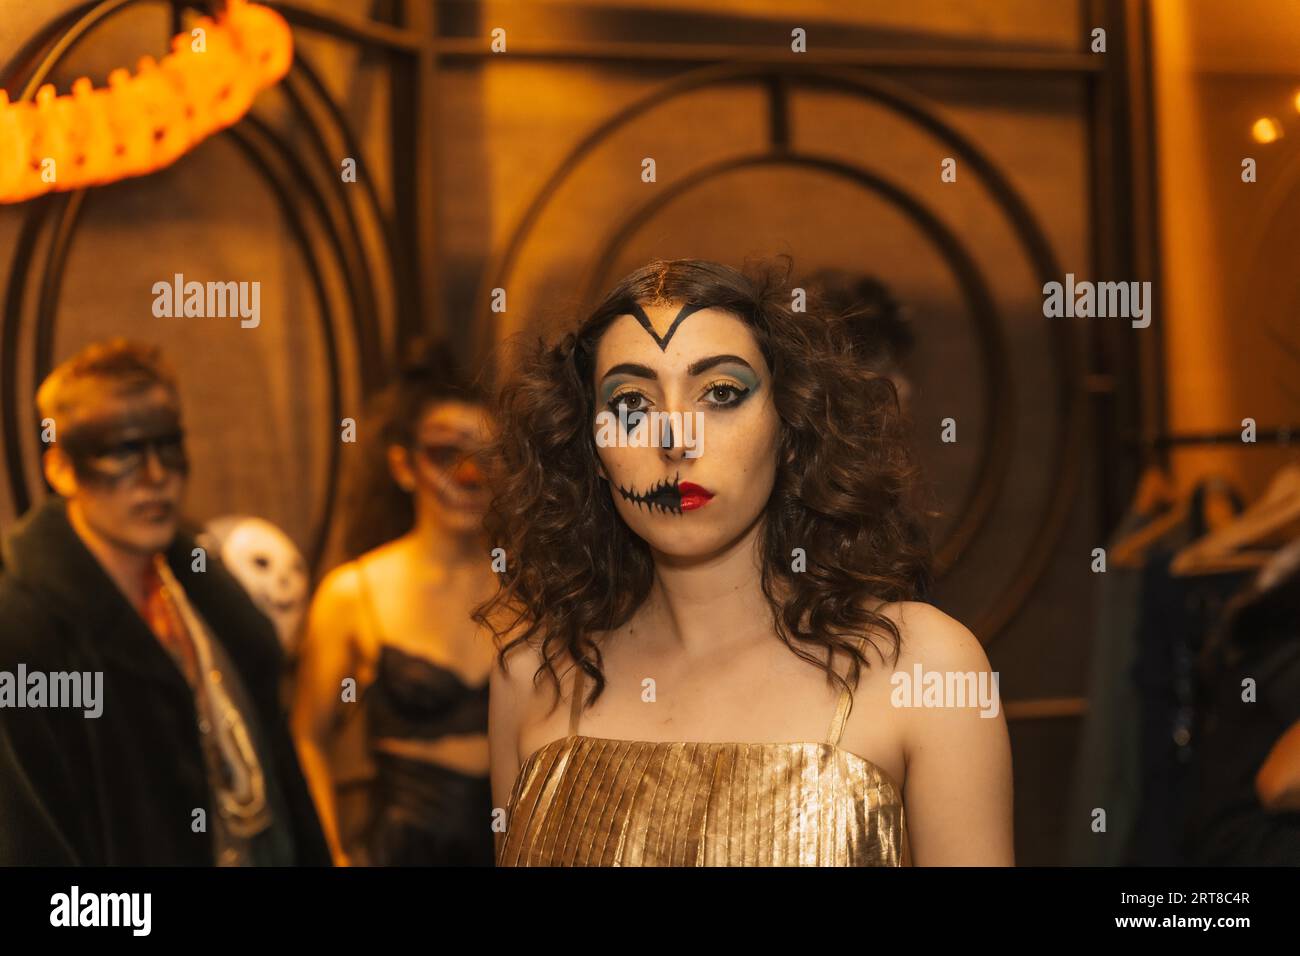 Fête d'Halloween avec des amis dans une discothèque, portrait d'une femme en costume avec lit peint Banque D'Images